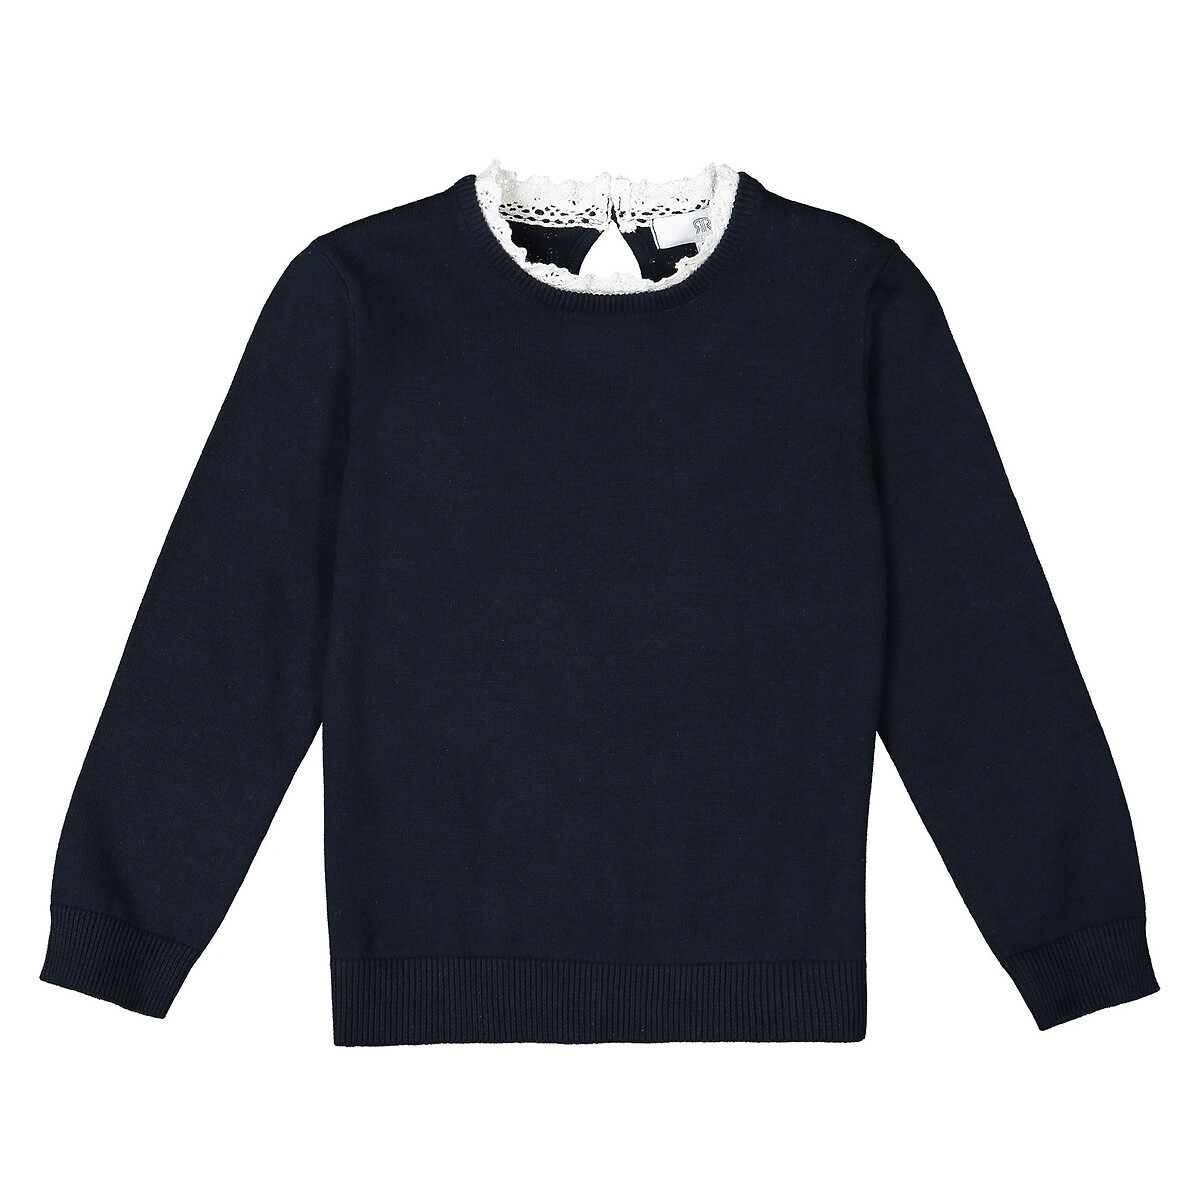 Пуловер La Redoute С эффектом  в  воротник связан крючком  4 года - 102 см синий, размер 4 года - 102 см - фото 2